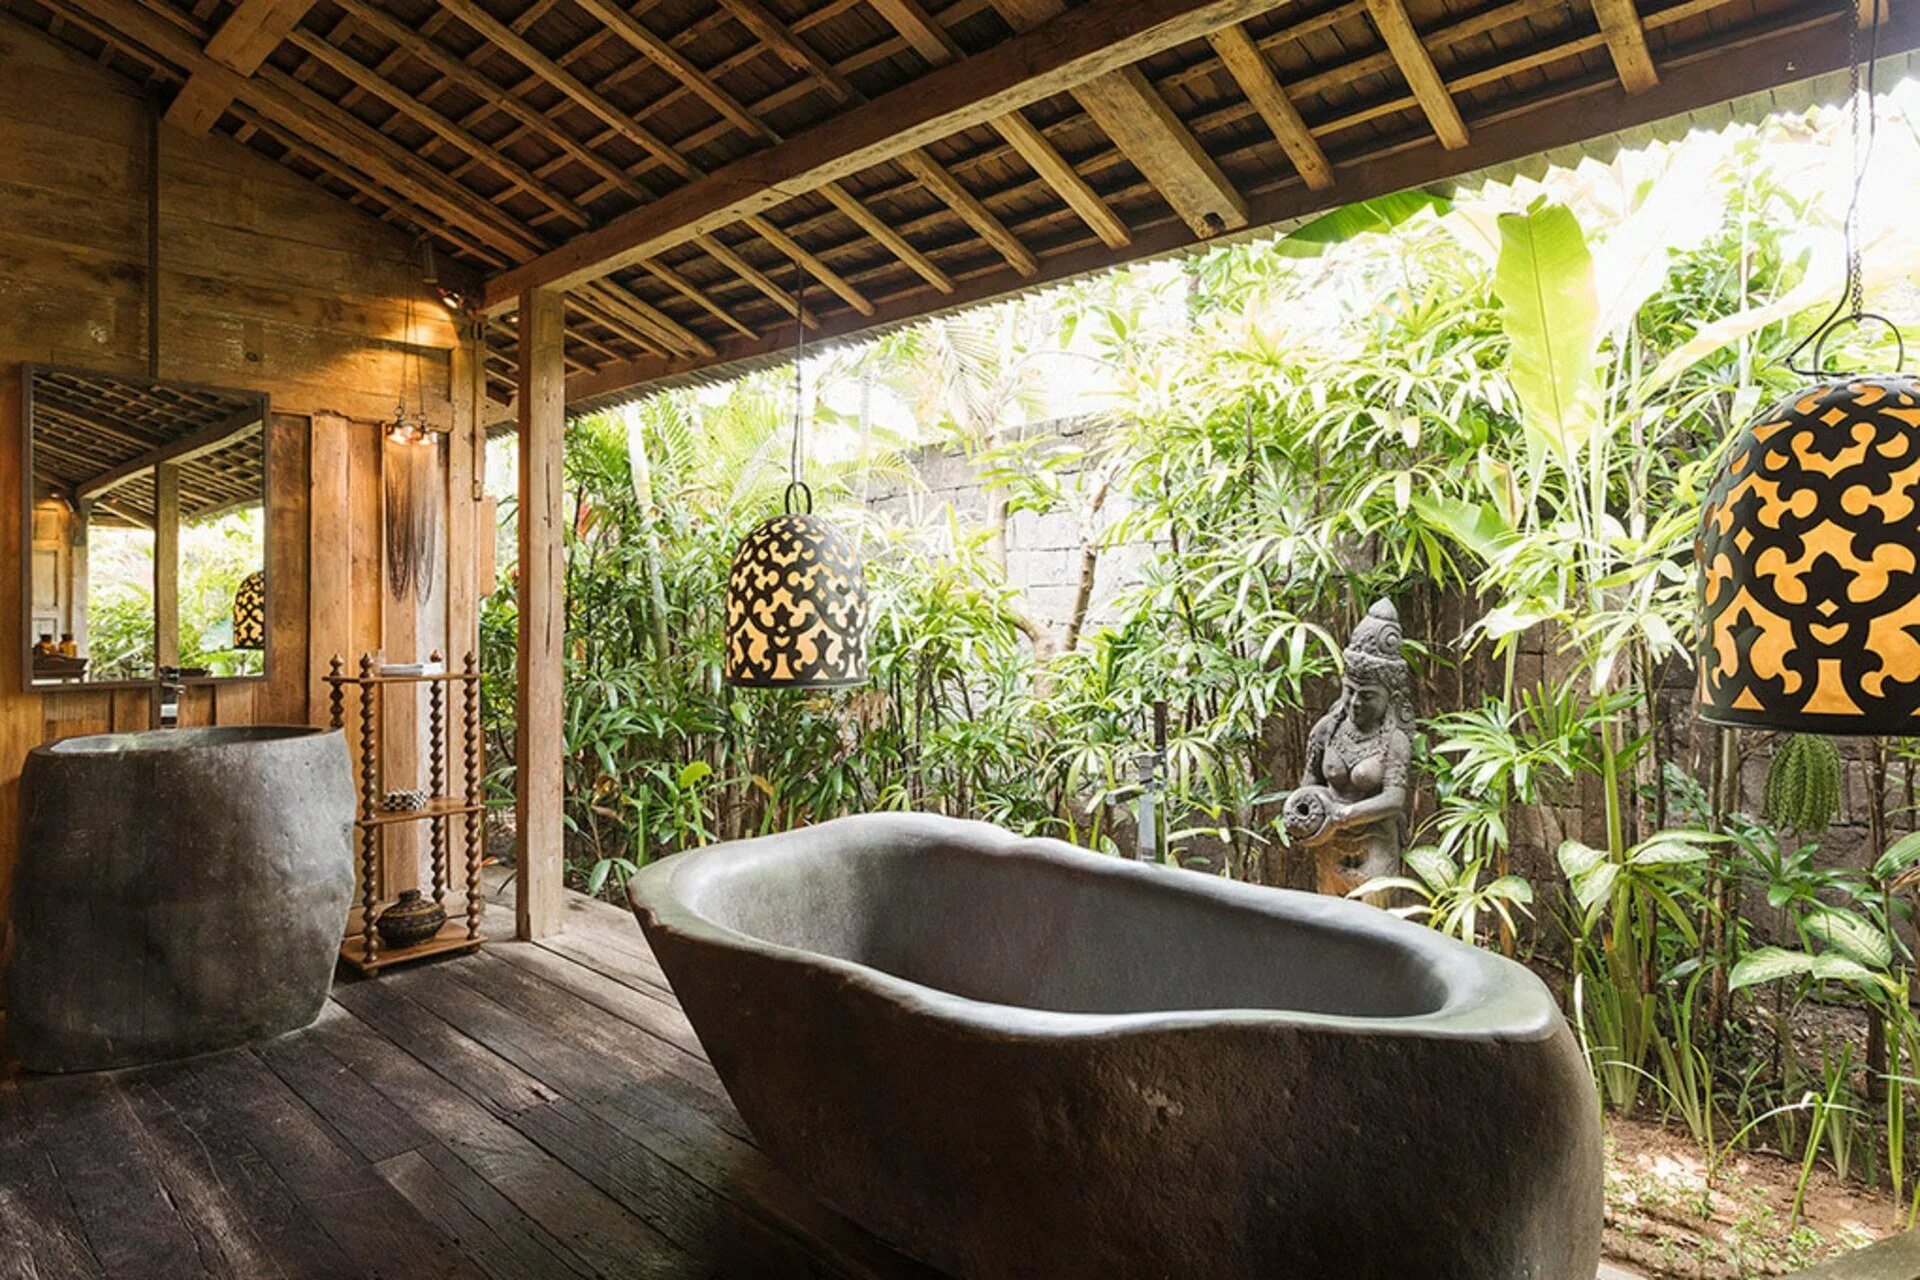 Ванная комната Балли в стиле Бали. Индонезия Бали интерьер. Вилла в балийском стиле. Интерьер спа Балийский стиль.